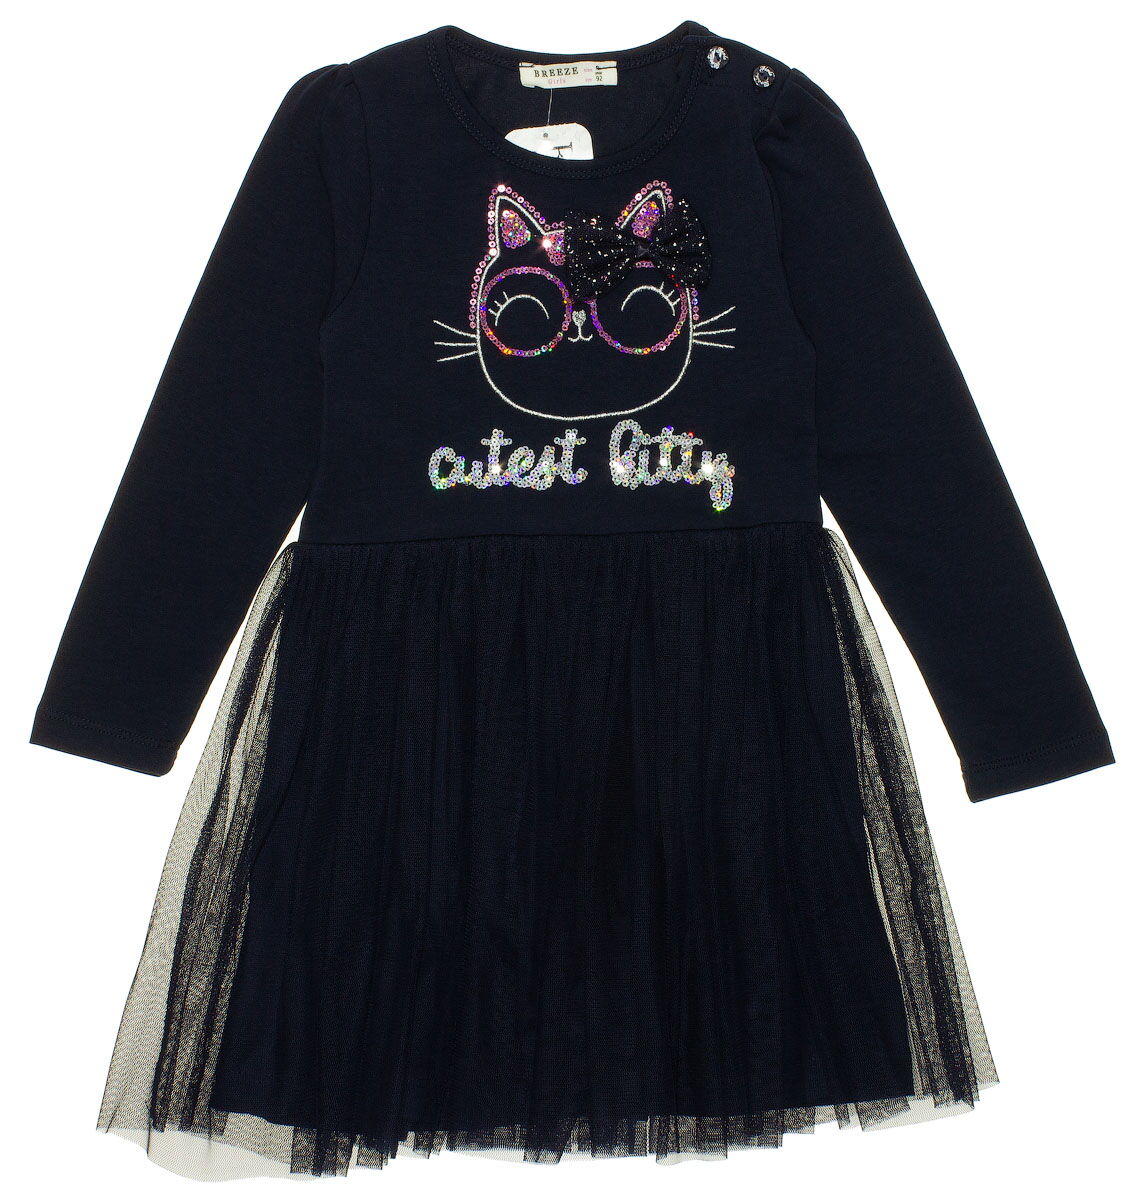 Платье для девочки Breeze Cutest kitty темно-синее 13694 - цена